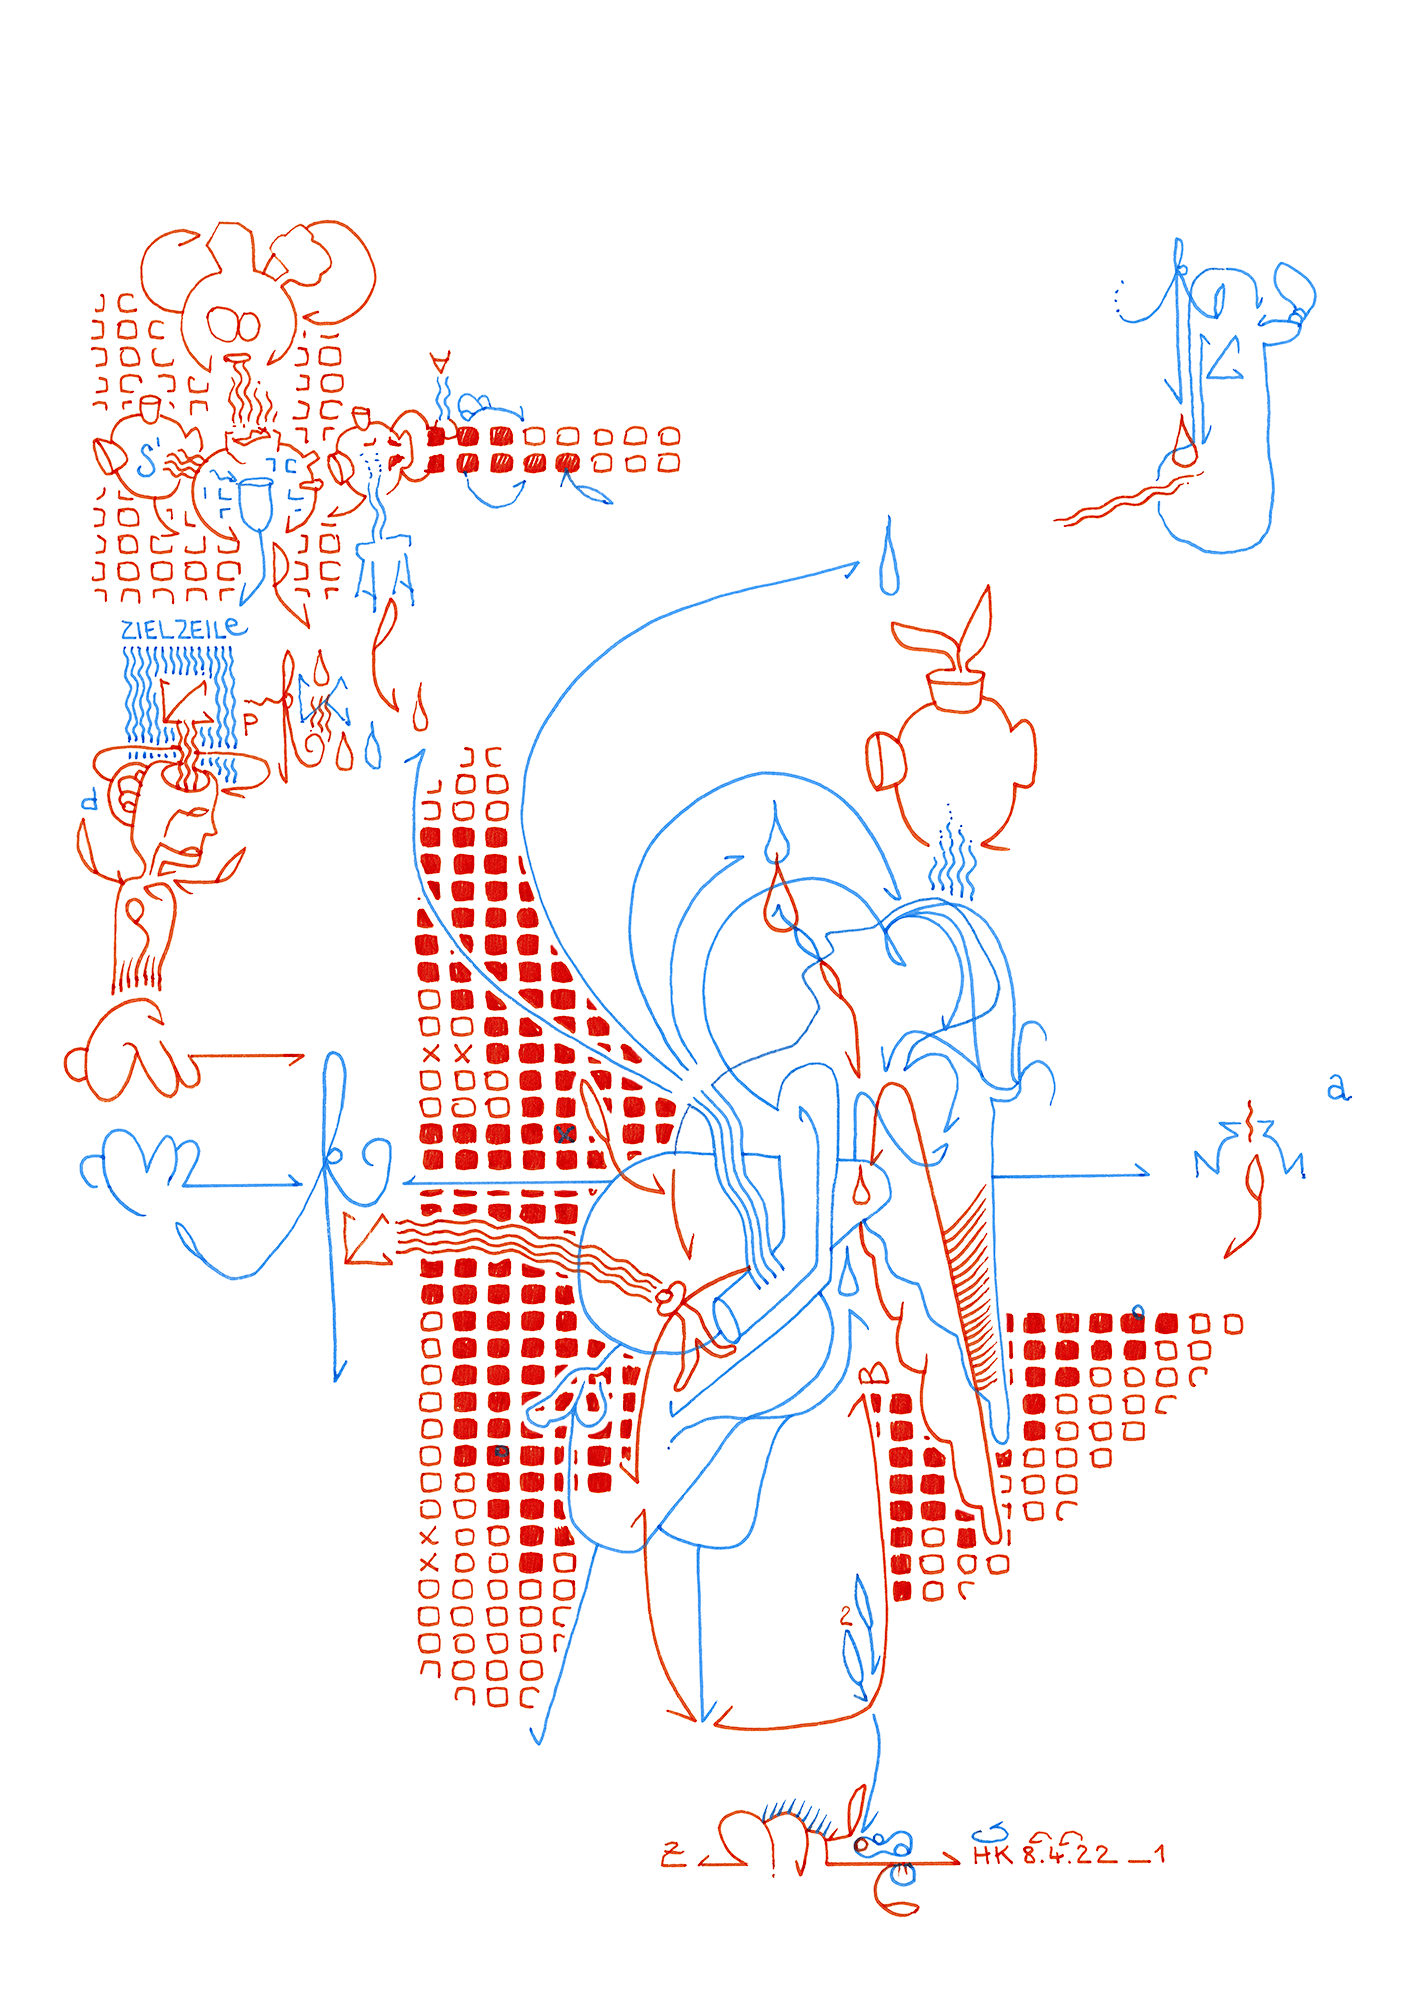 Hannes Kater: Tageszeichnung (Zeichnung/drawing) vom 08.04.2022 (1414 x 2000 Pixel)